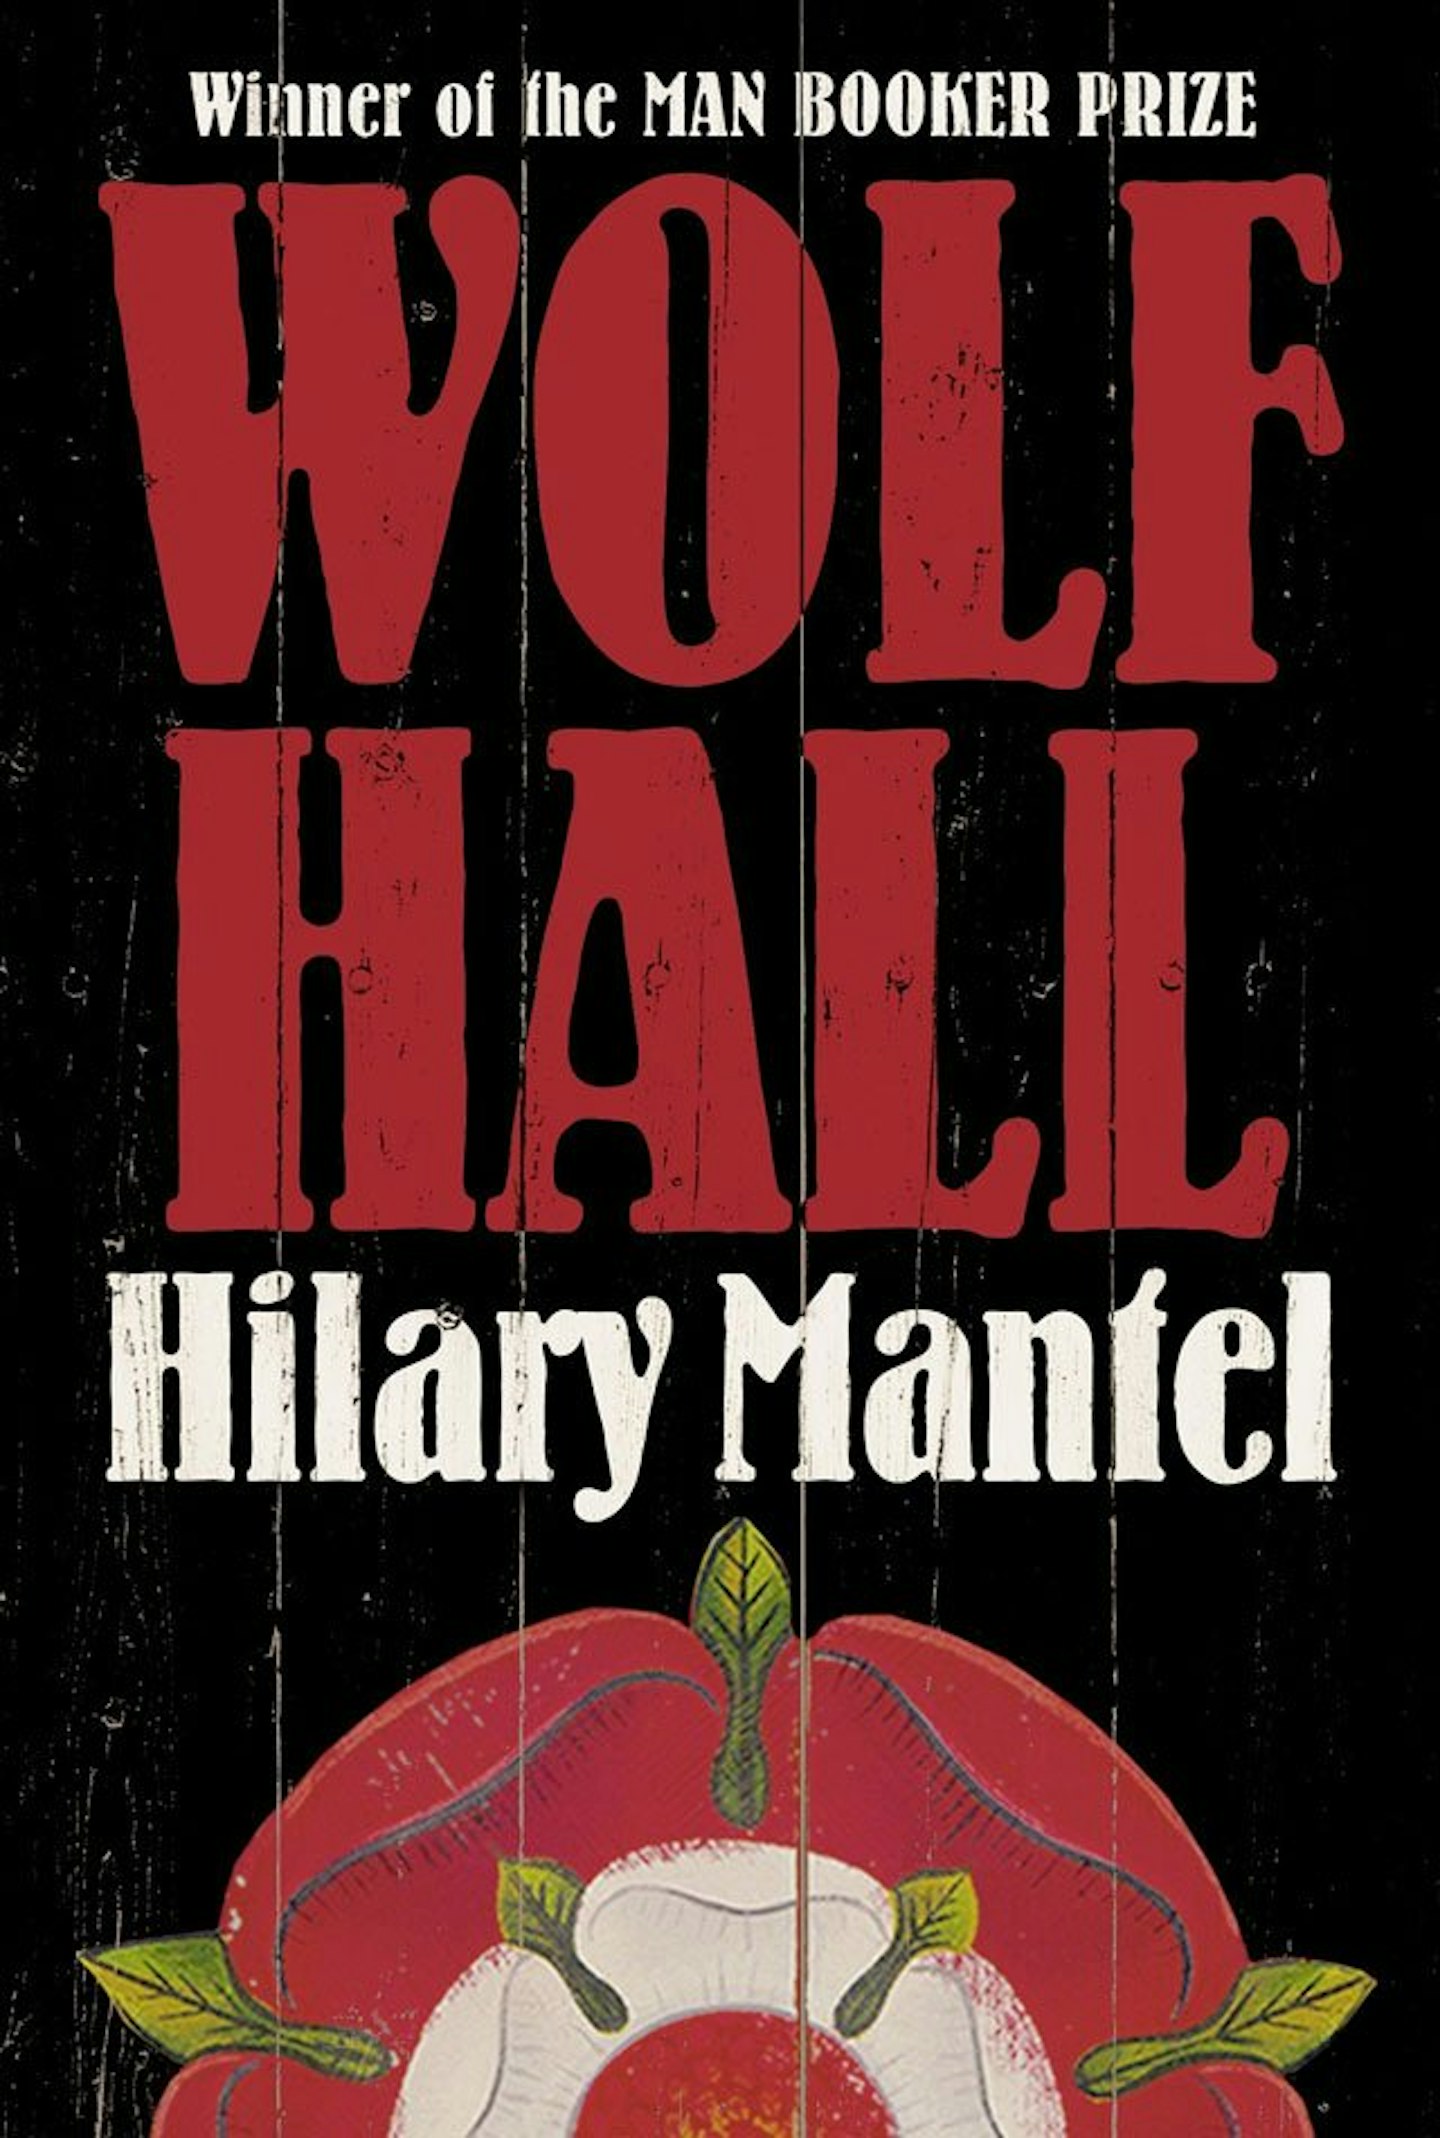 wolf-hall